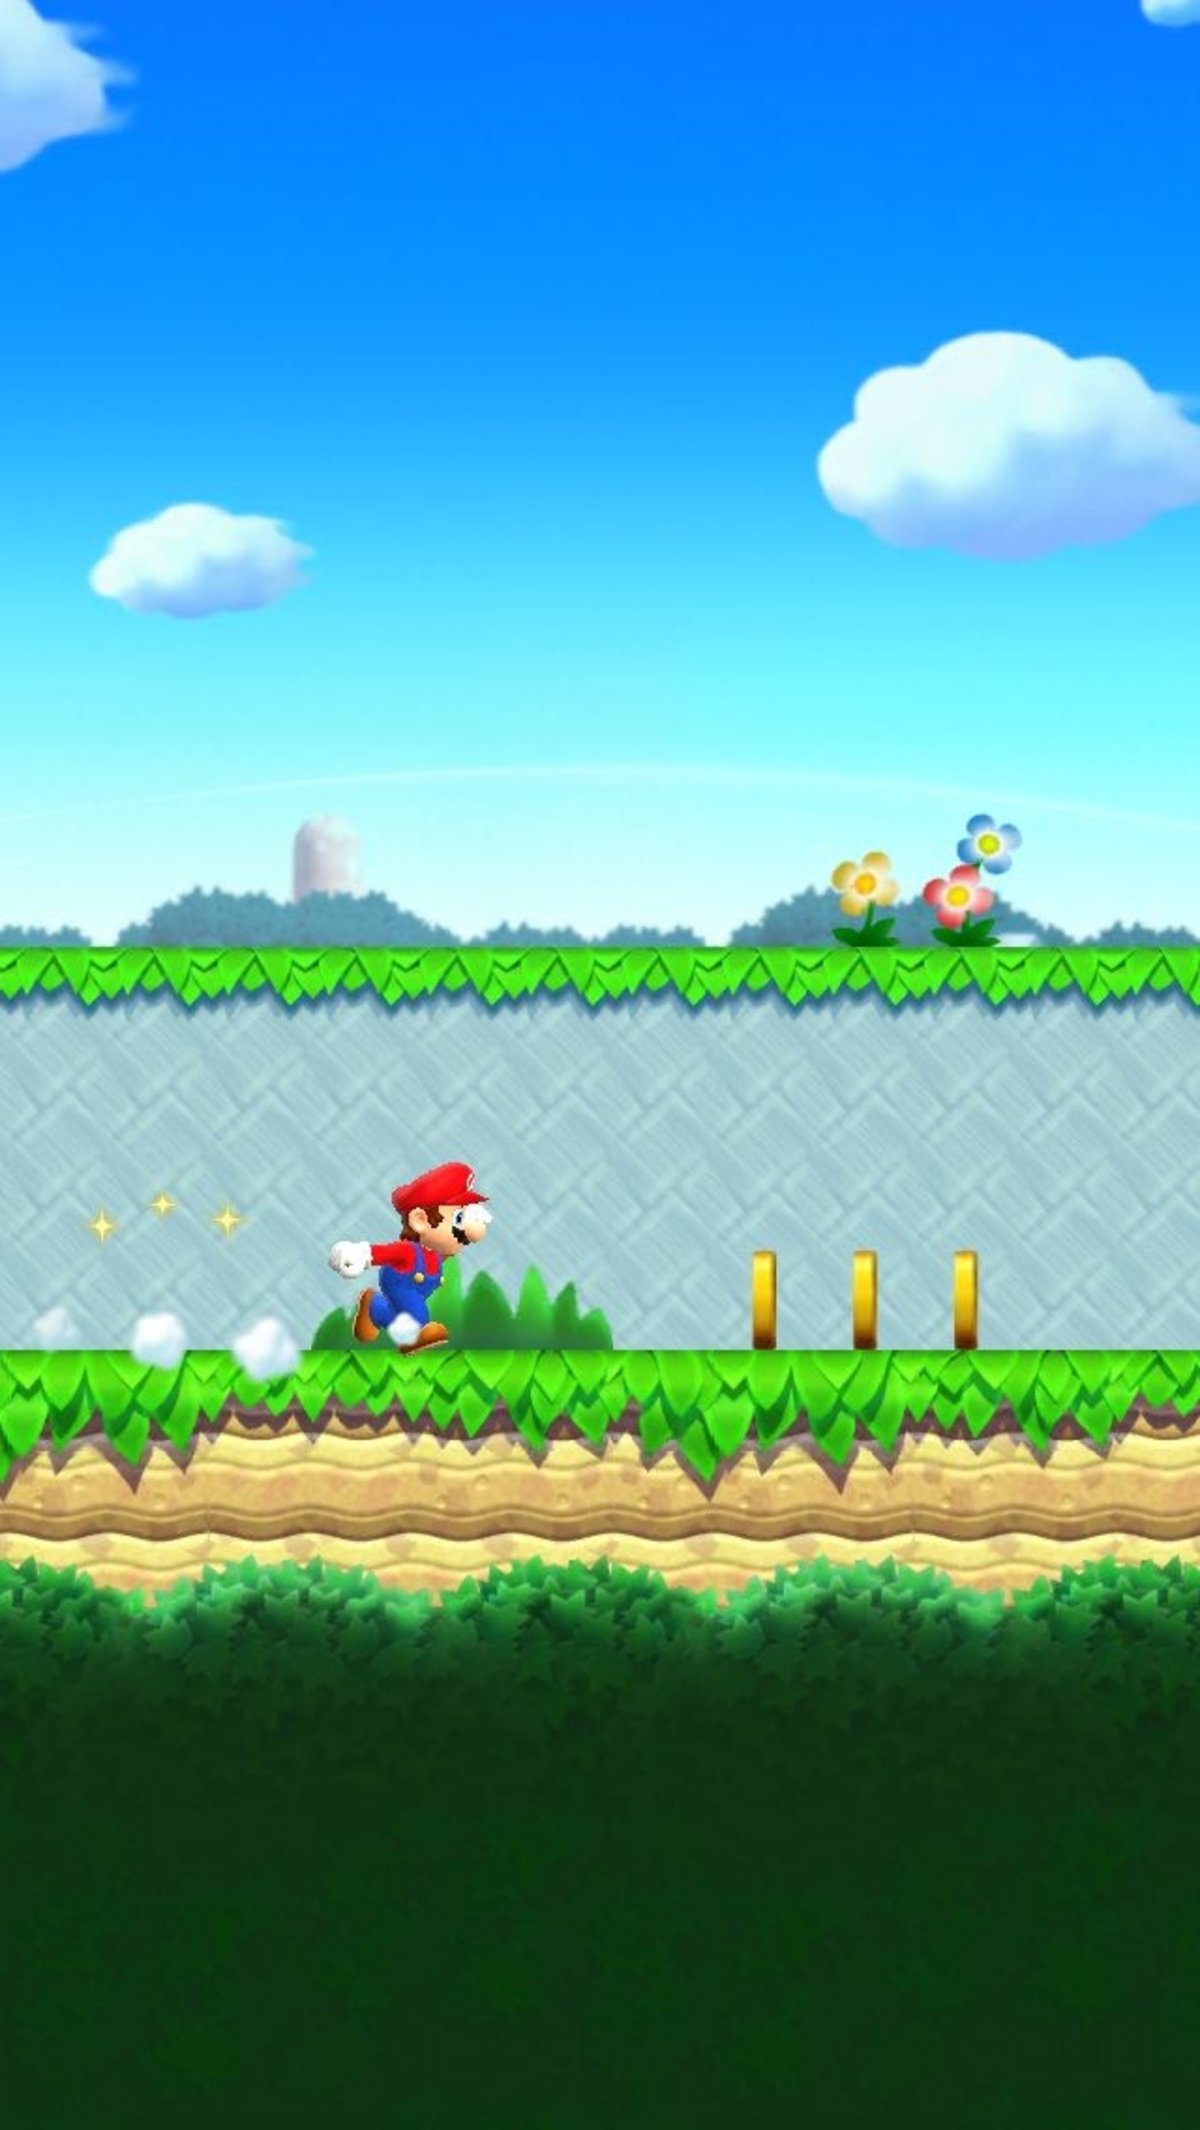 ¡Corre, Mario, corre!